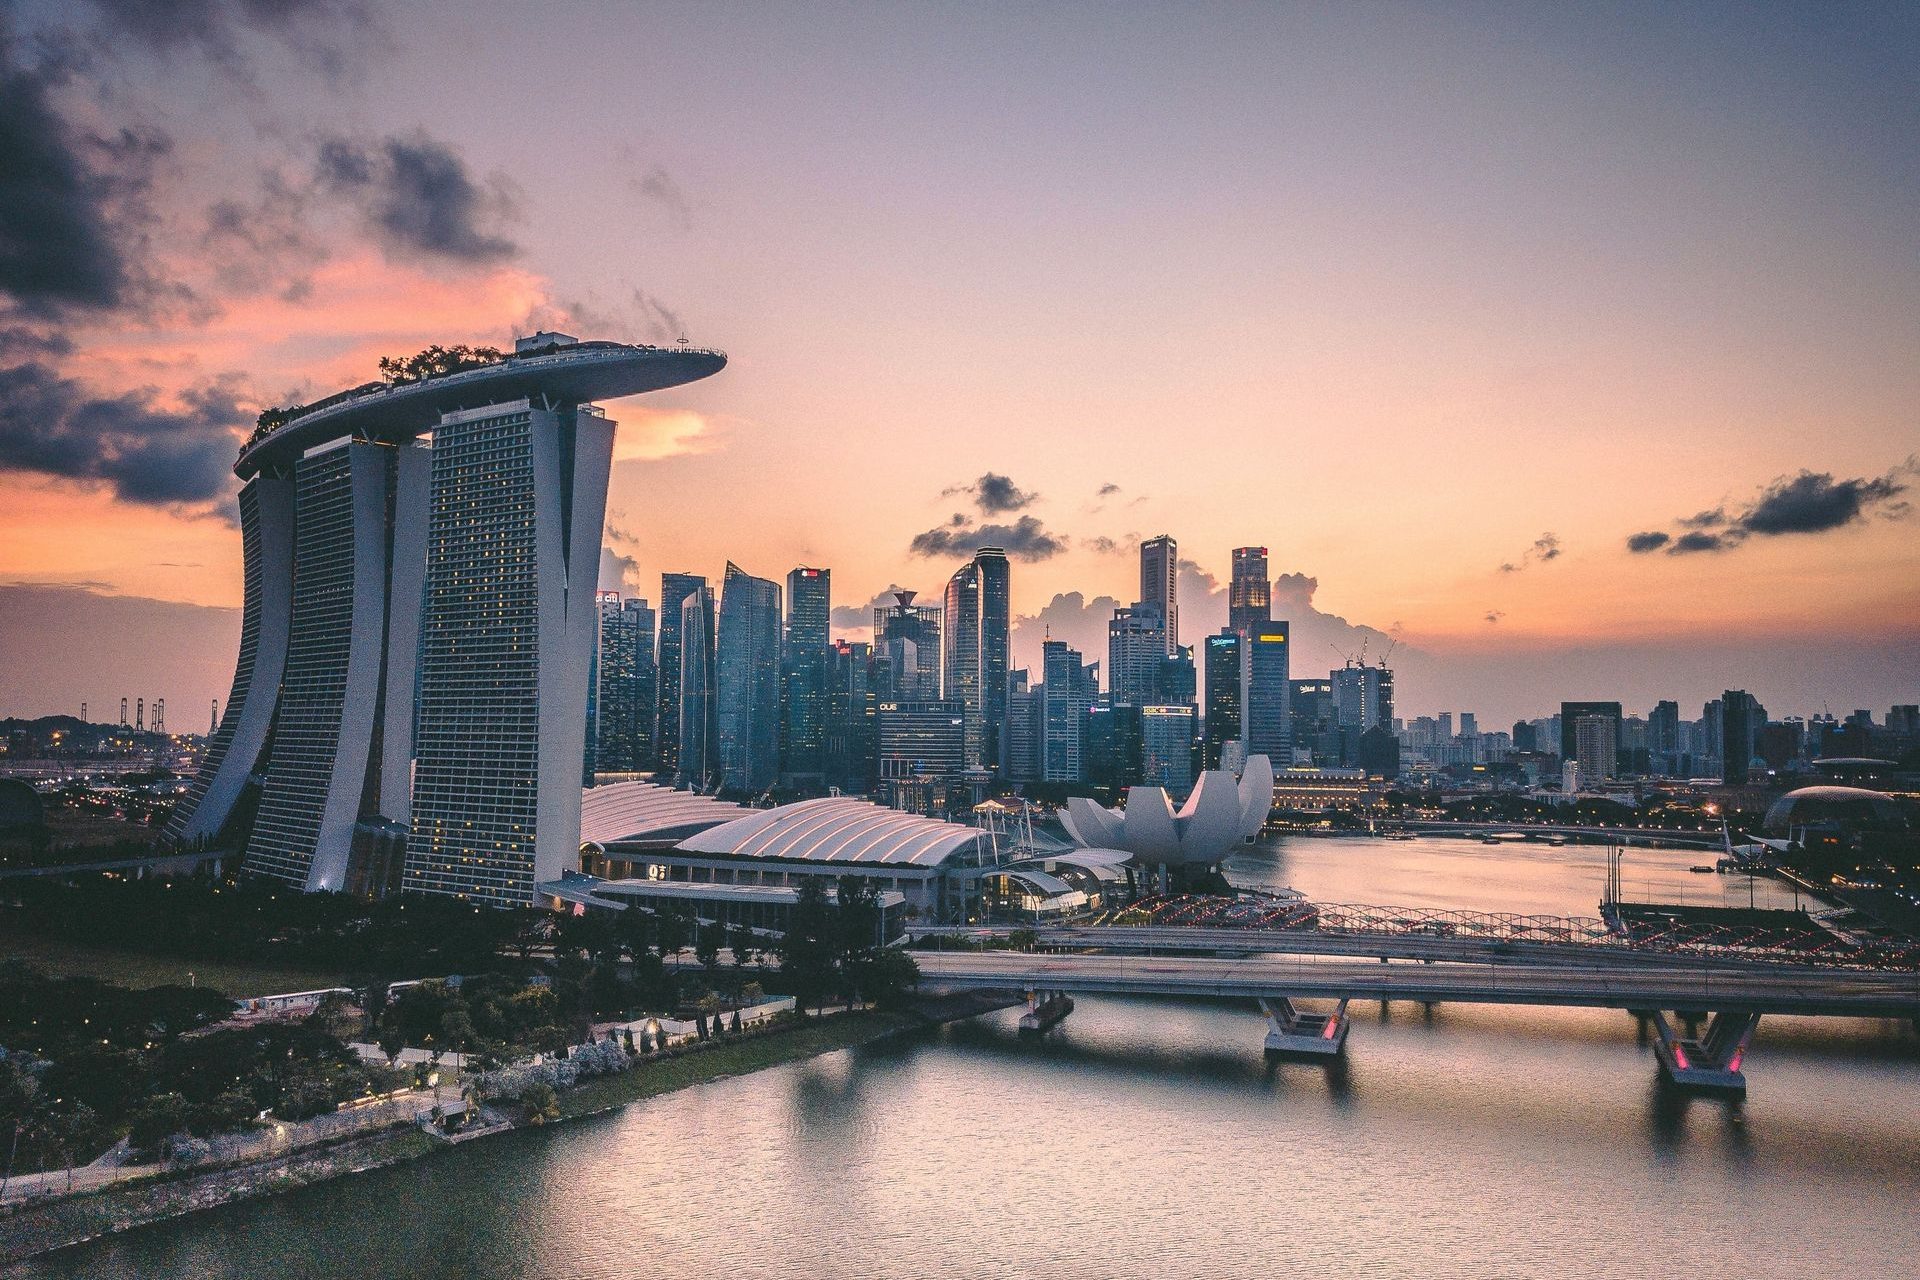 5# Singapour (249 800 millionnaires)